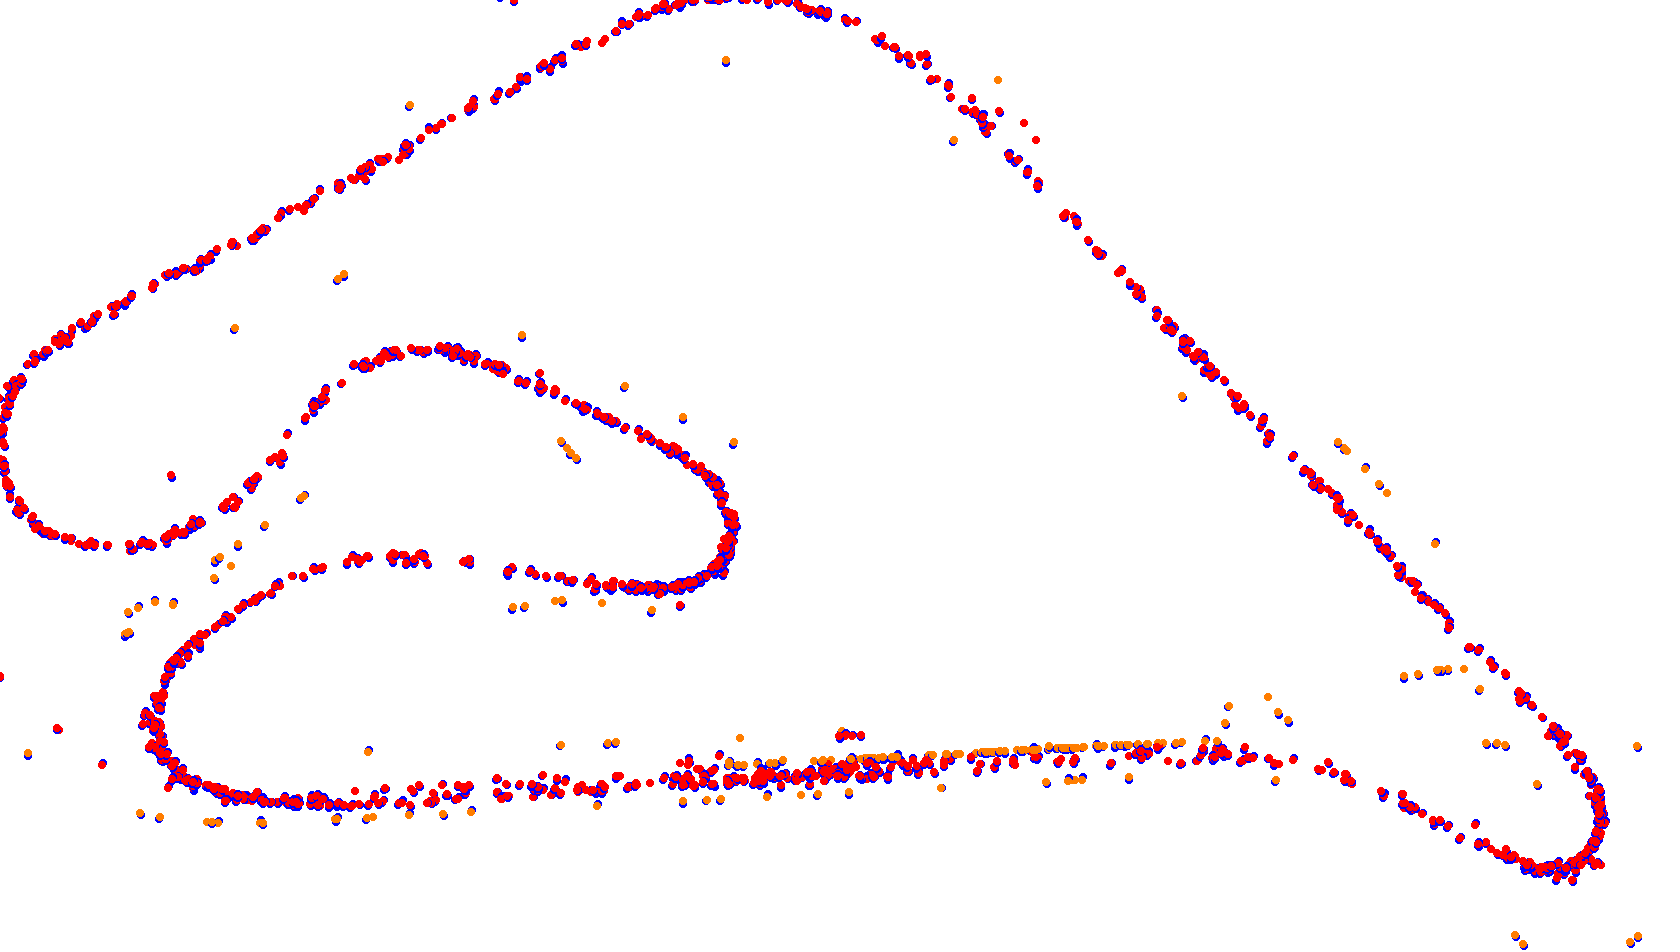 Autodromo de Buenos Aires (GT) Circuit No. 8 collisions